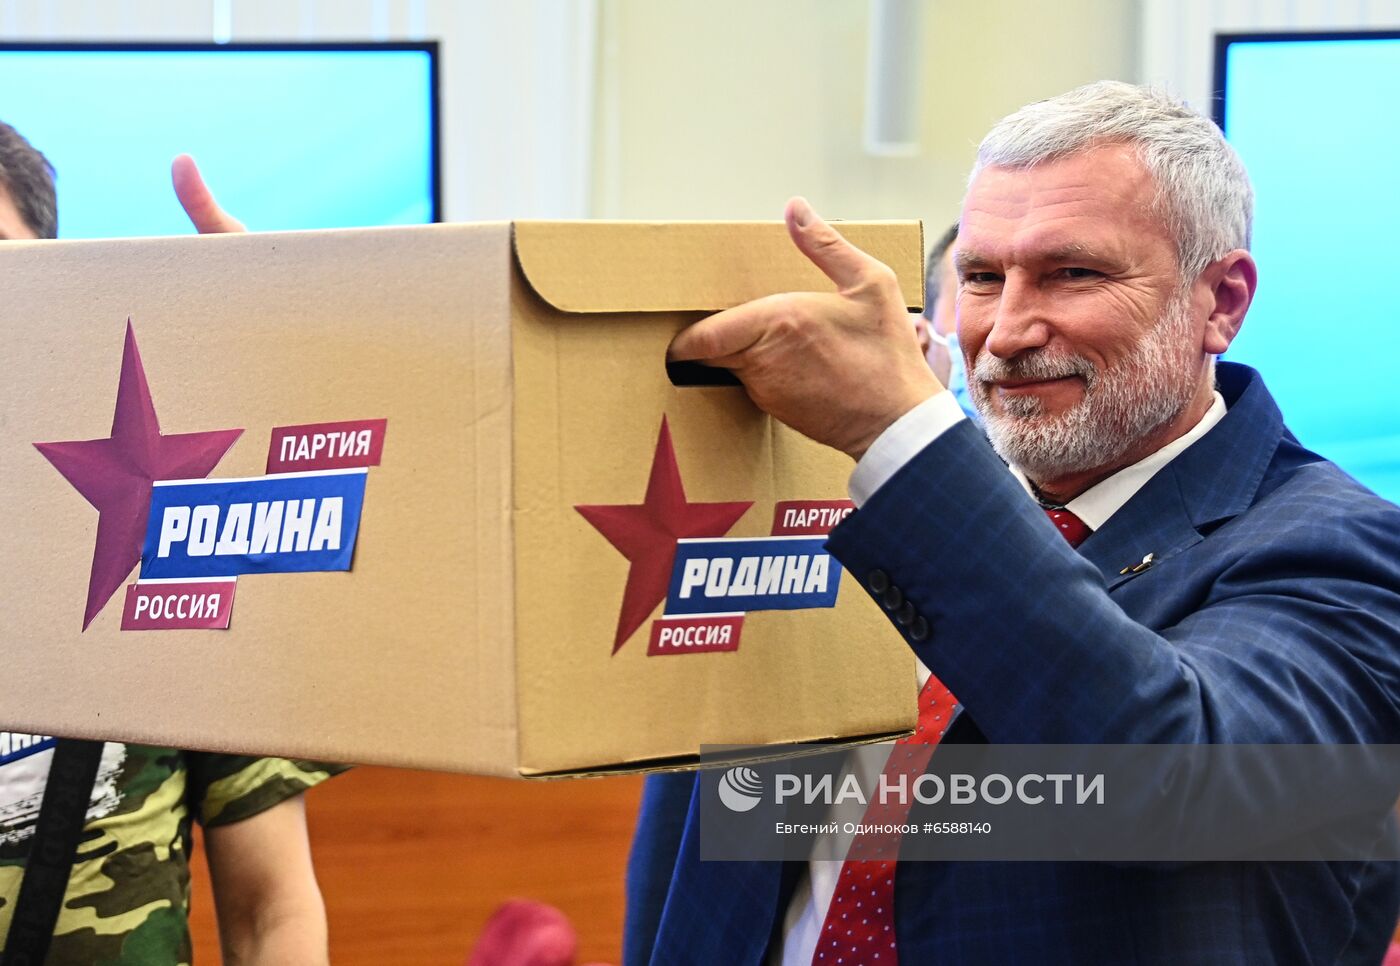 Подача документов партией "Родина" для регистрации кандидатов в депутаты Госдумы 